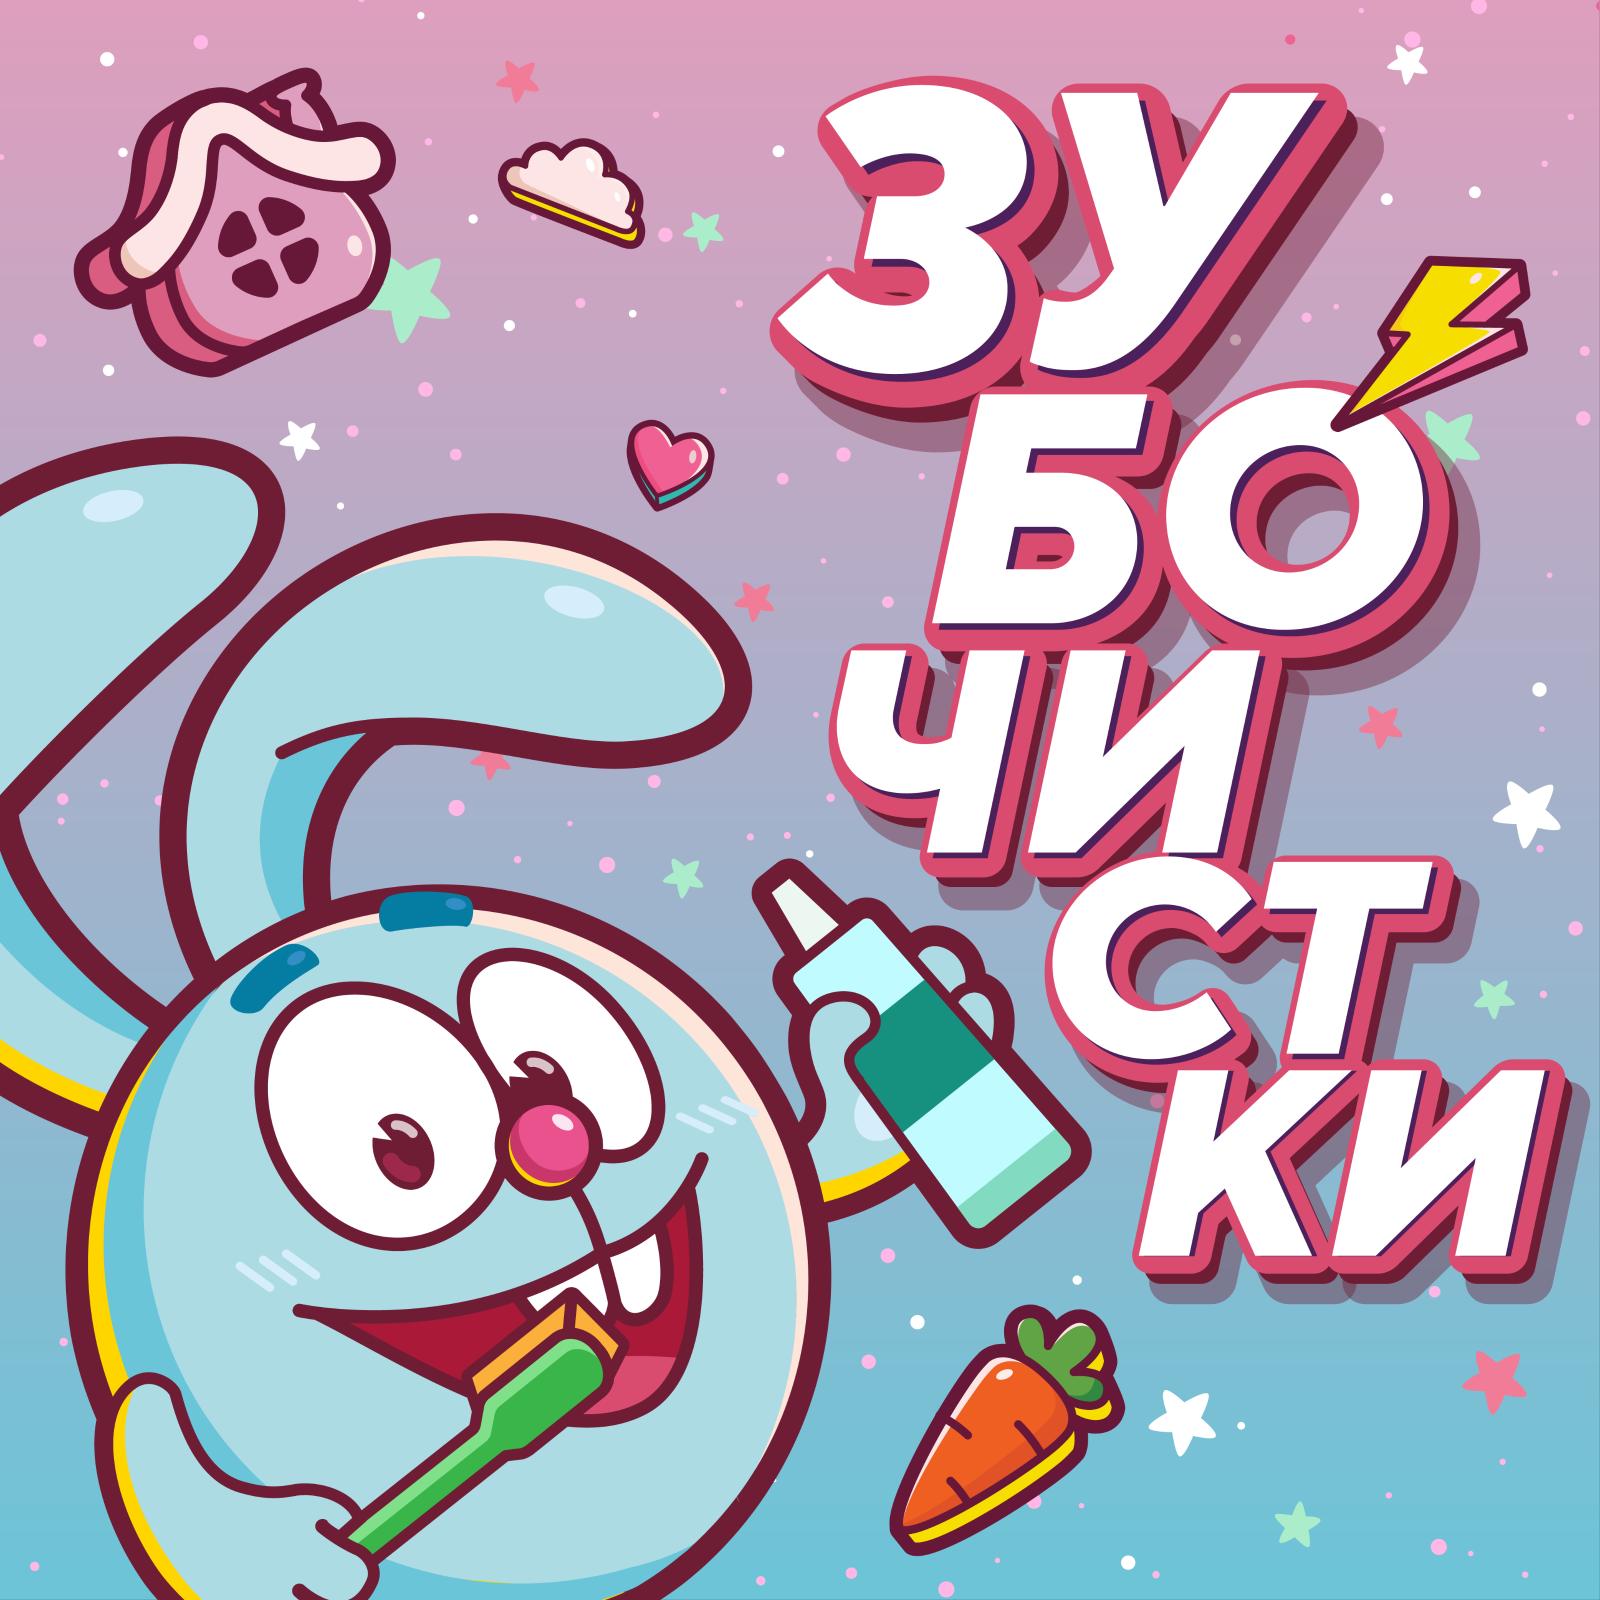 На Яндекс.Музыке появился познавательный подкаст для детей «Зубочистки» с героями «Смешариков»